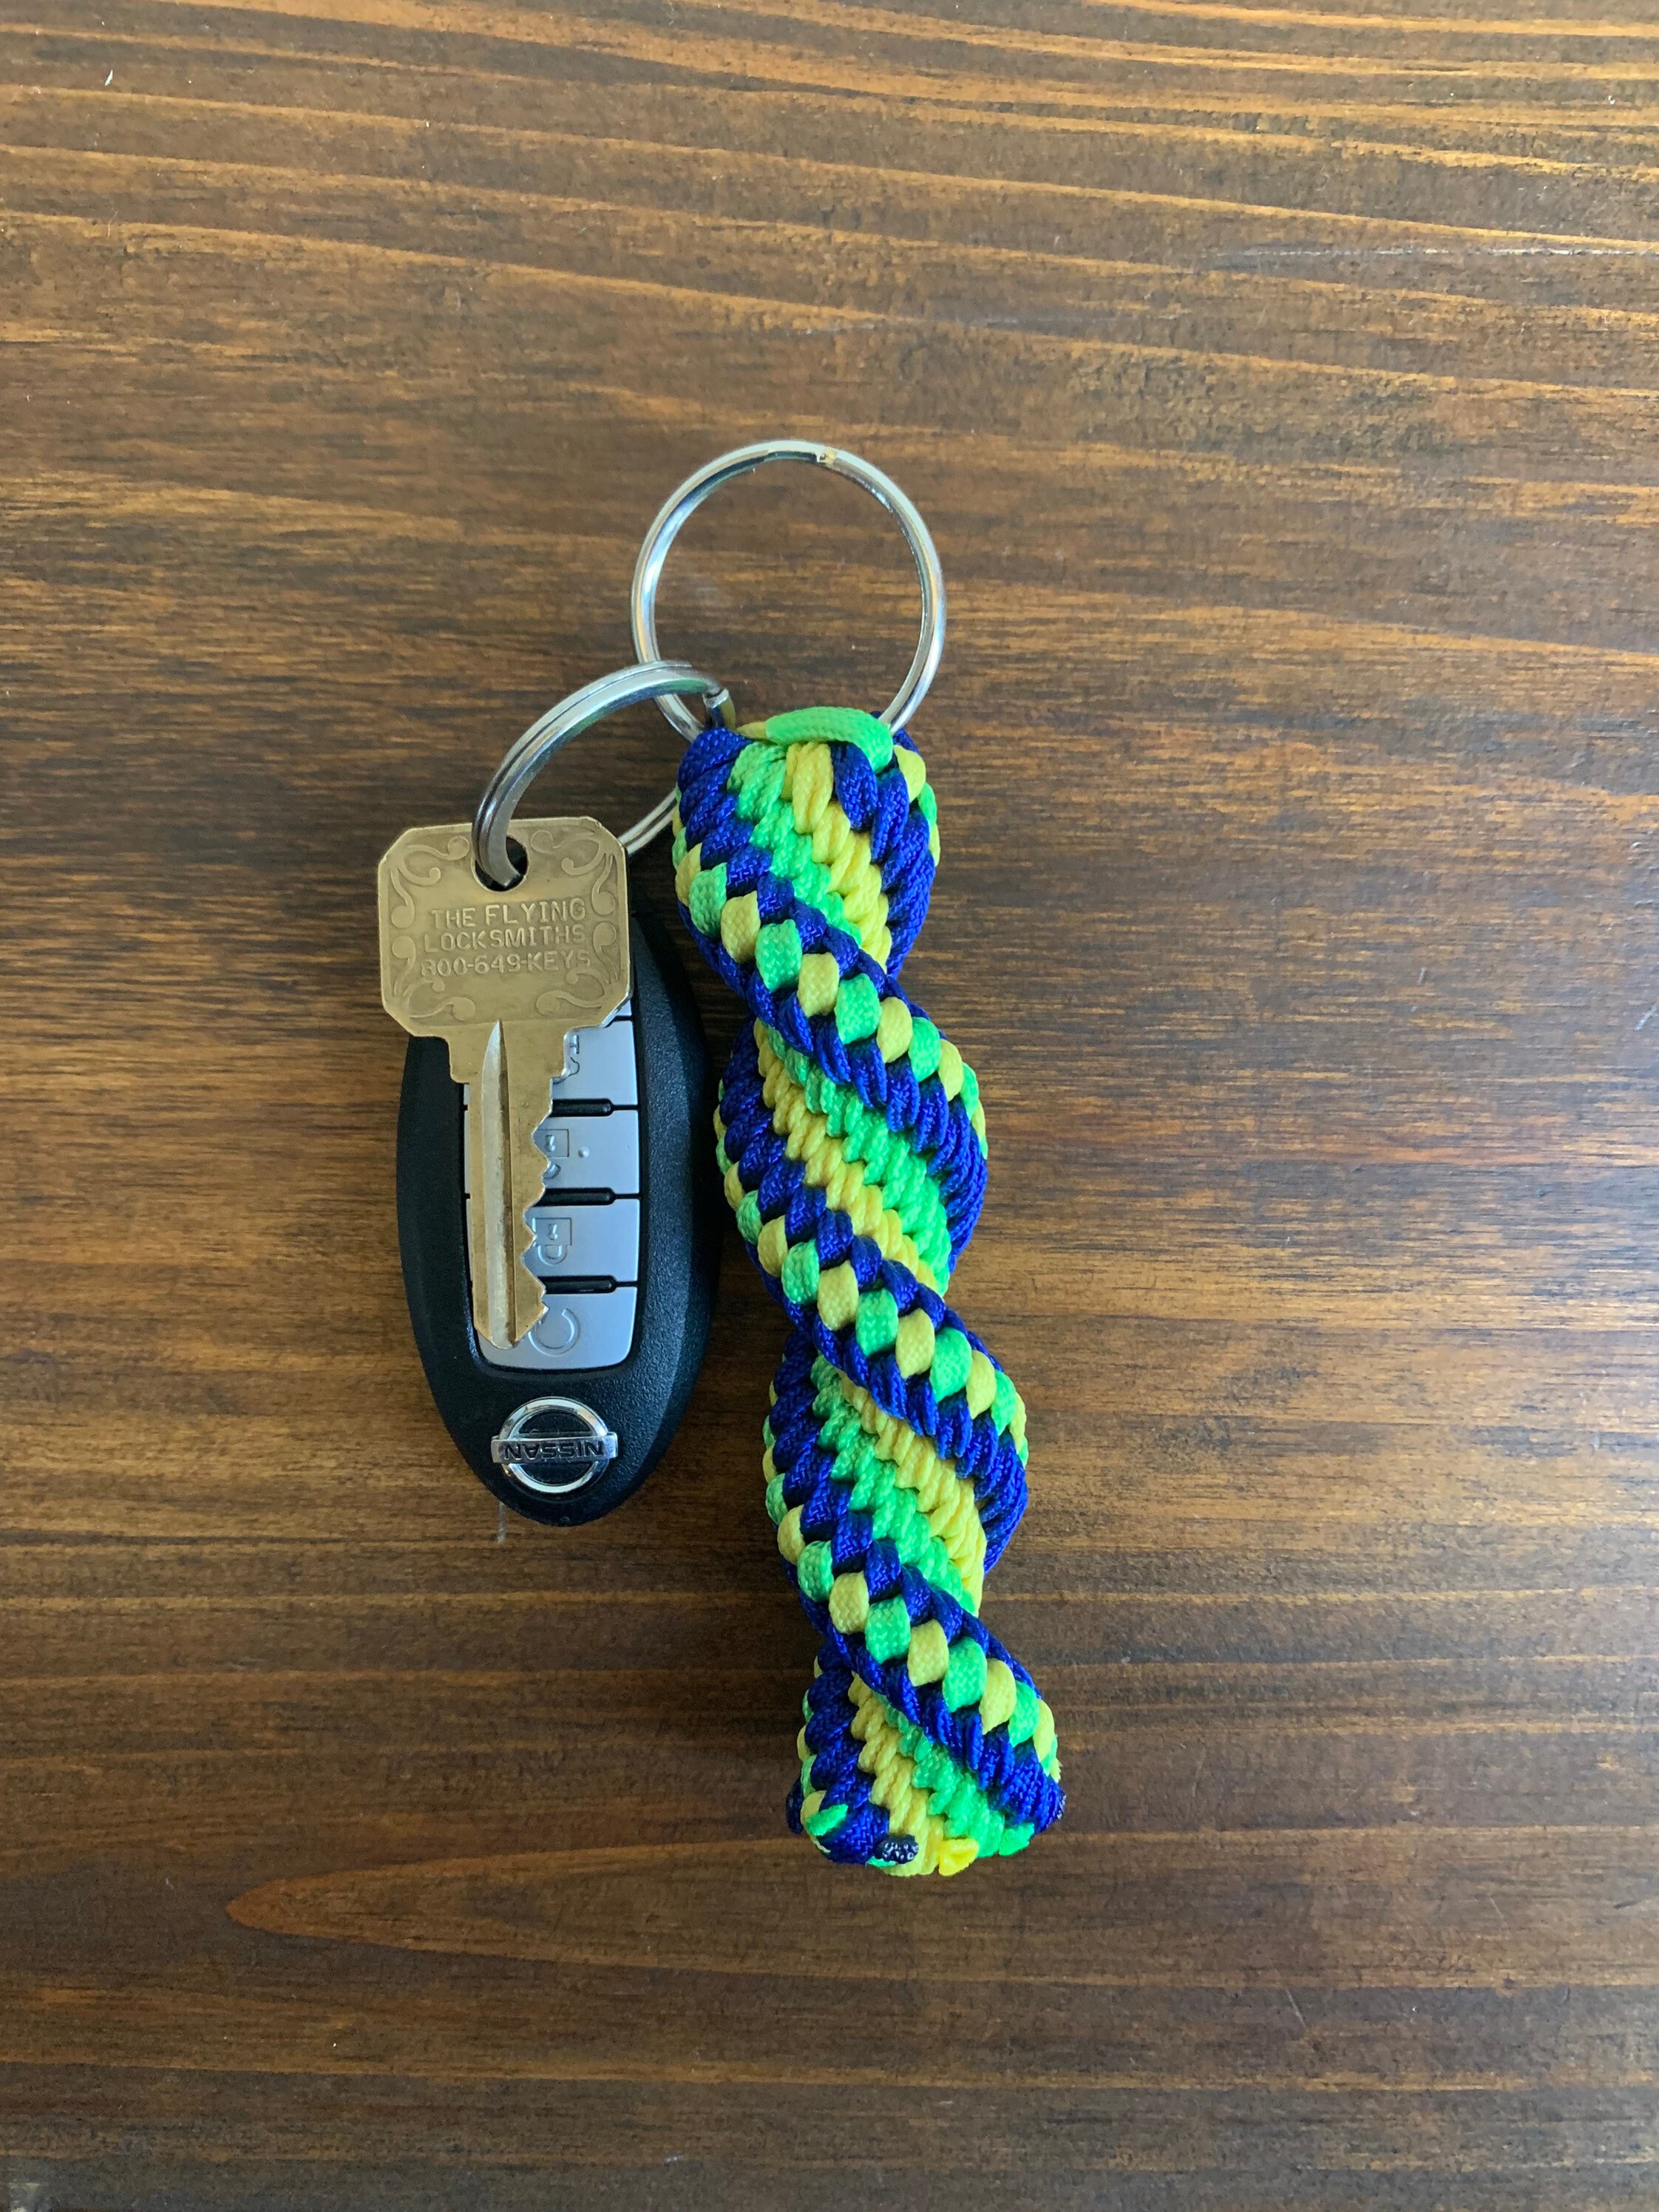 Neon Keychain, Boondoggle Keychain, Gimp Plastic Lacing Keychain